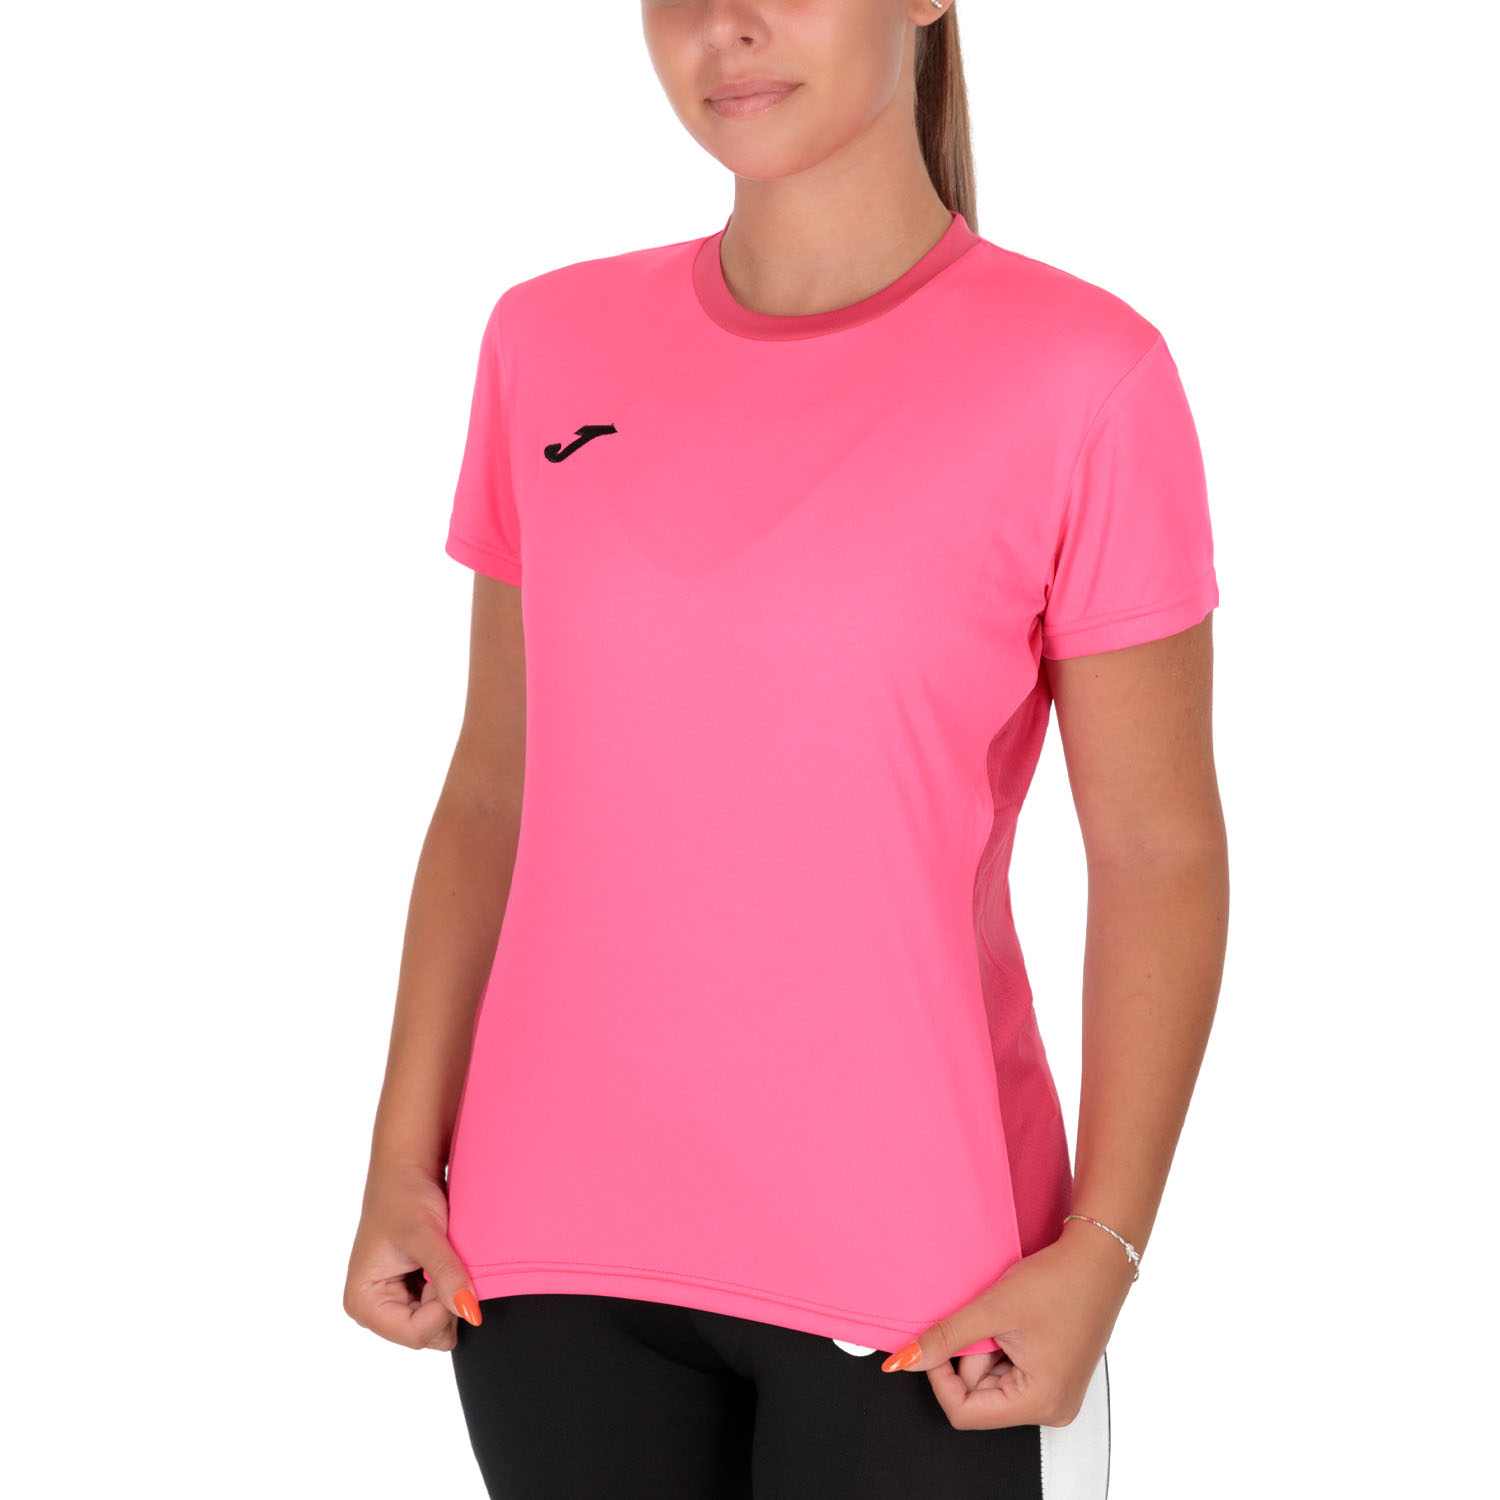 Joma Winner II Camiseta - Fluor Pink